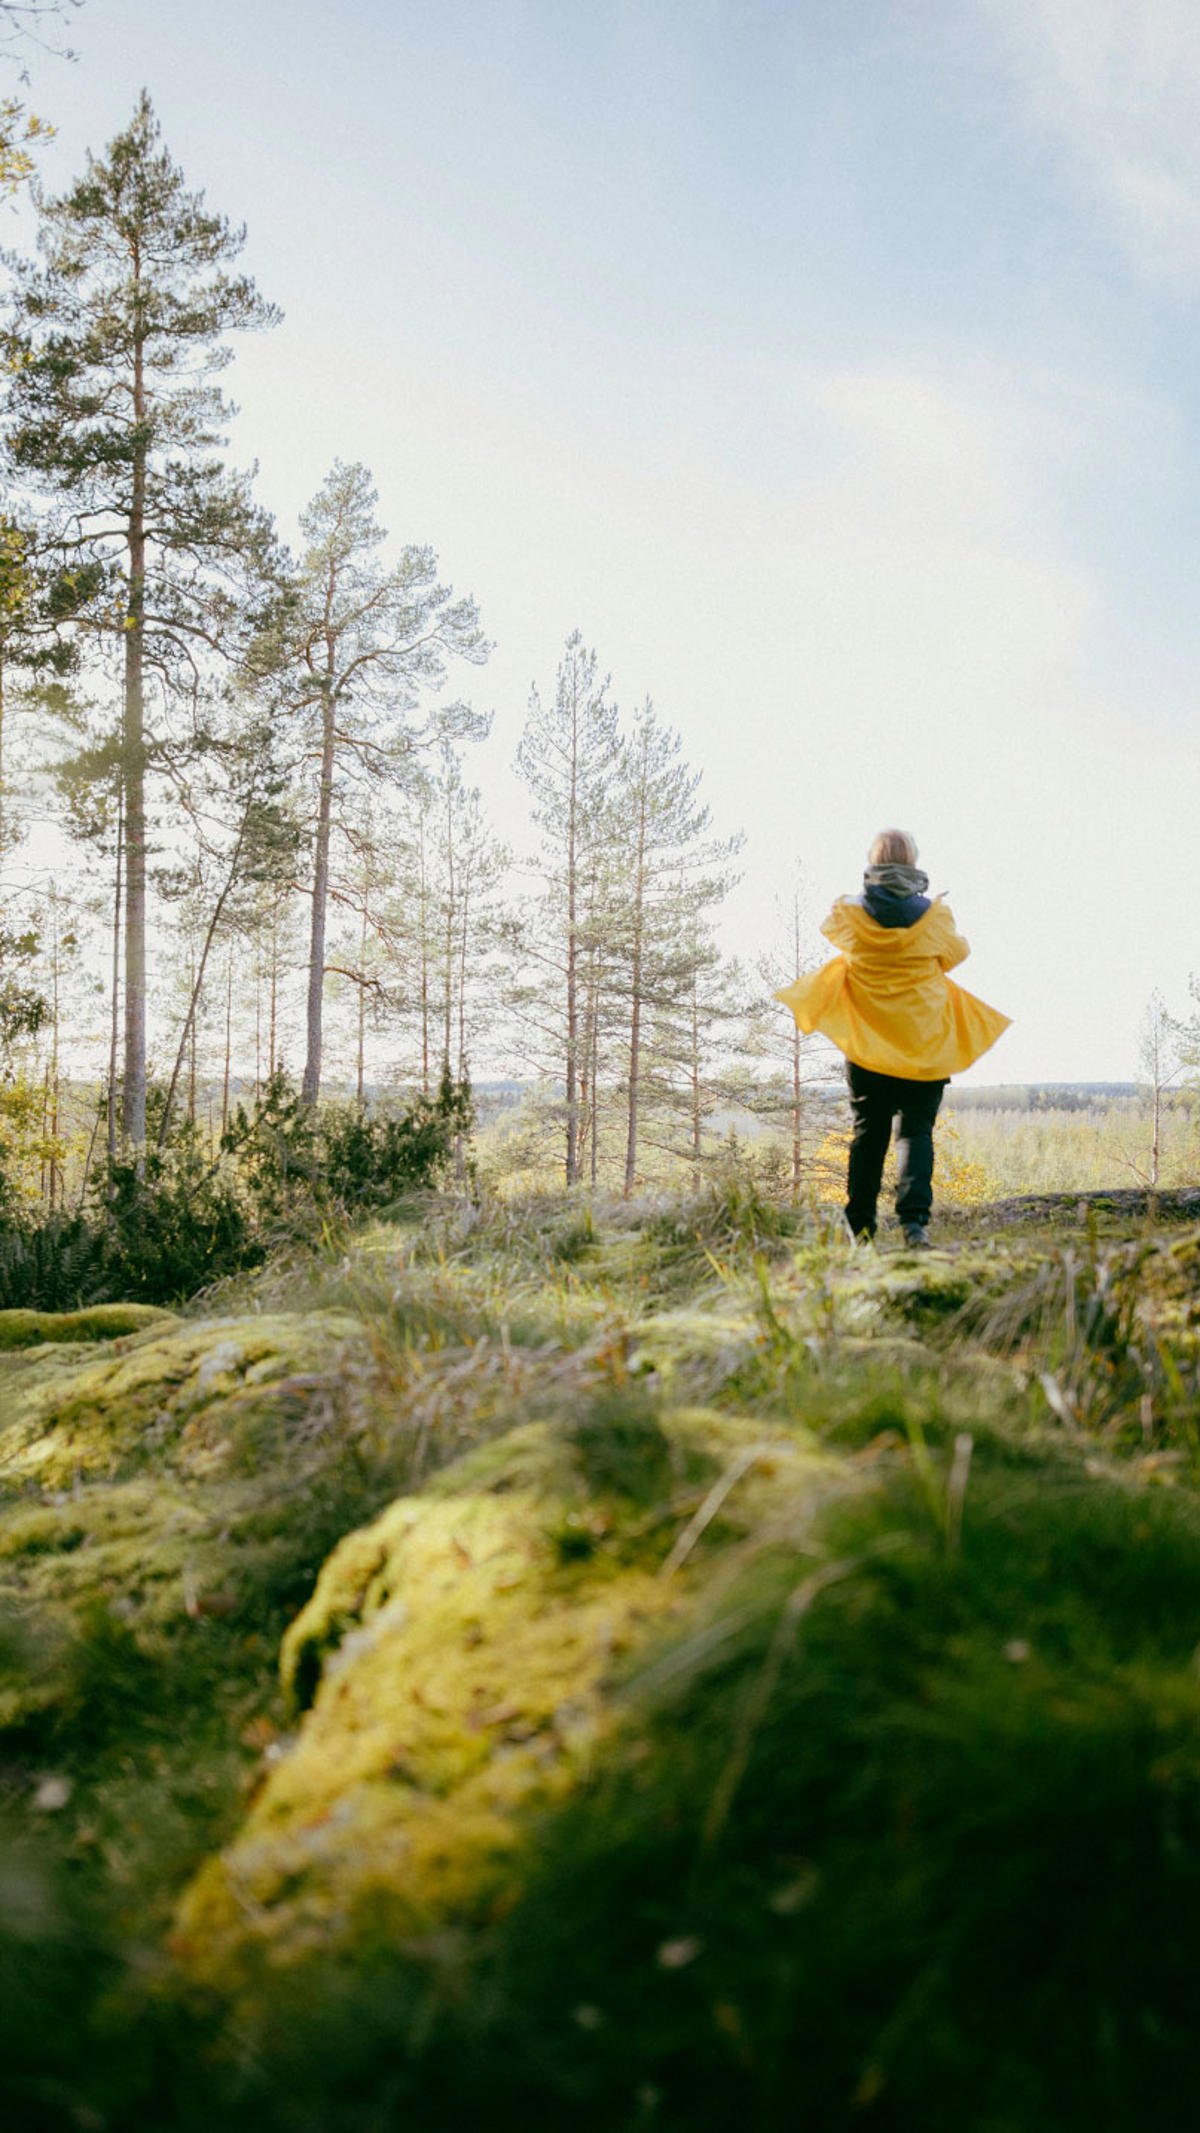 Sadetakkinen nainen seisoo selin kameraan, hän ottaa valokuvaa suomalaisesta metsämaisemasta